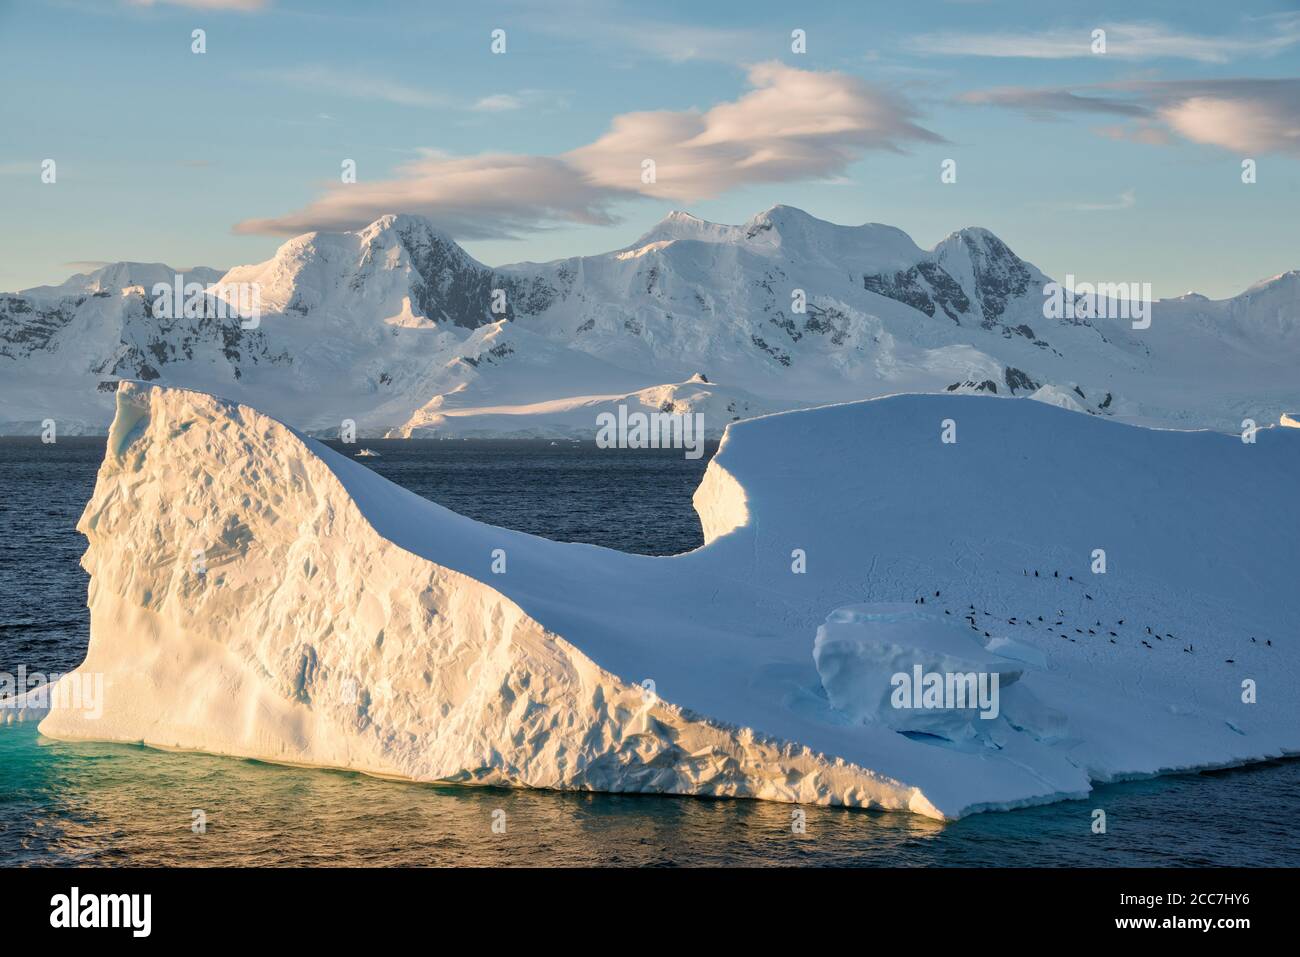 Un groupe de pingouins à collier (Pygoscelis antarcticus) reposant sur un iceberg massif alors que le soleil se couche sur le paysage antarctique. Banque D'Images